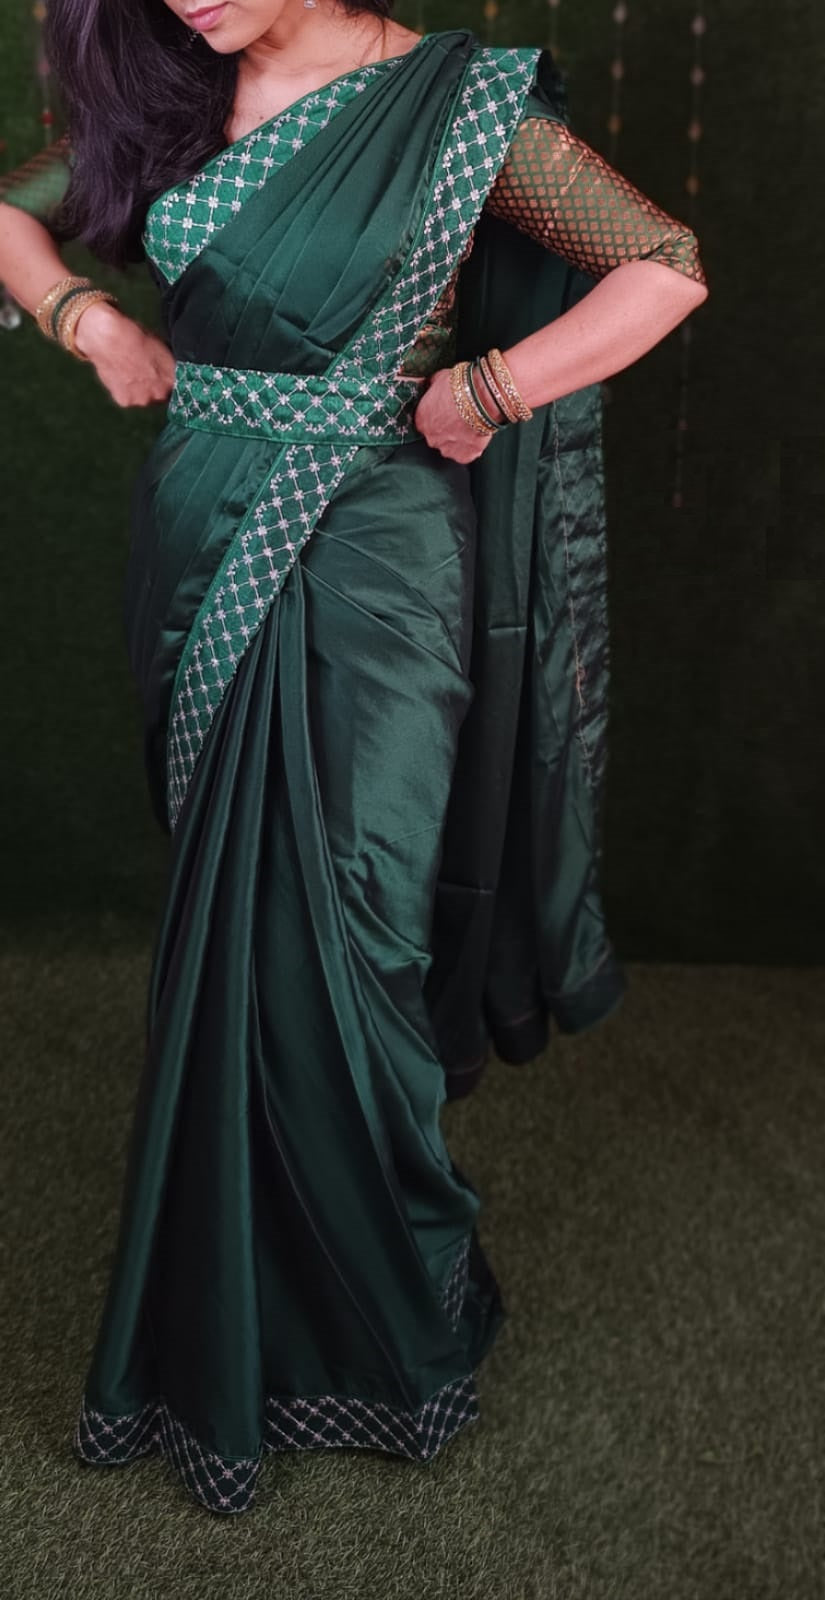 Georgette Ladies Golden Saree Belt at Rs 135/piece in Delhi